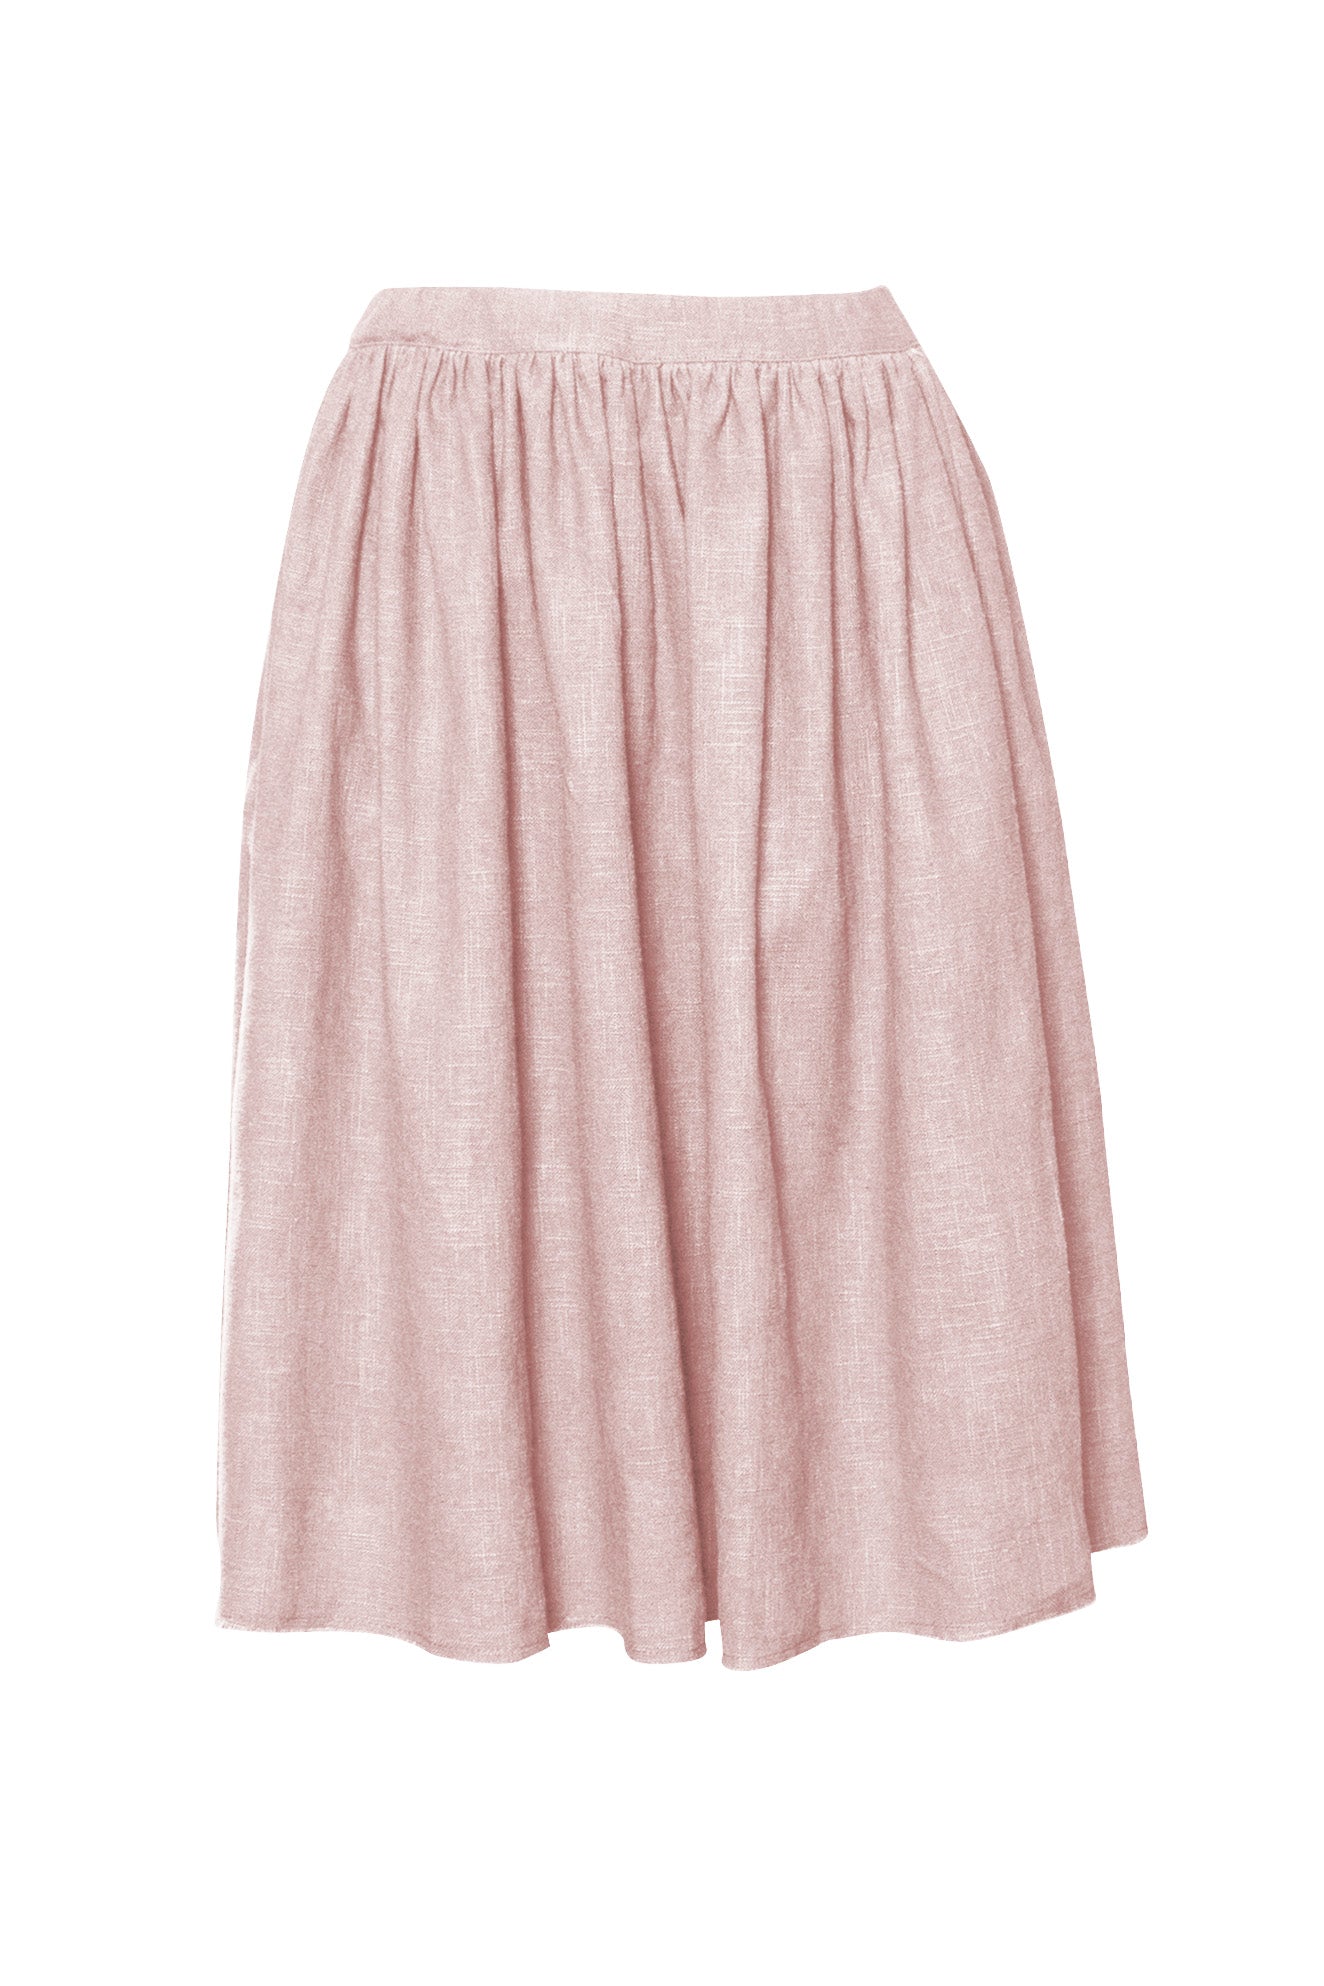 Blush  Raw Edge Linen Skirt - GIANNETTI